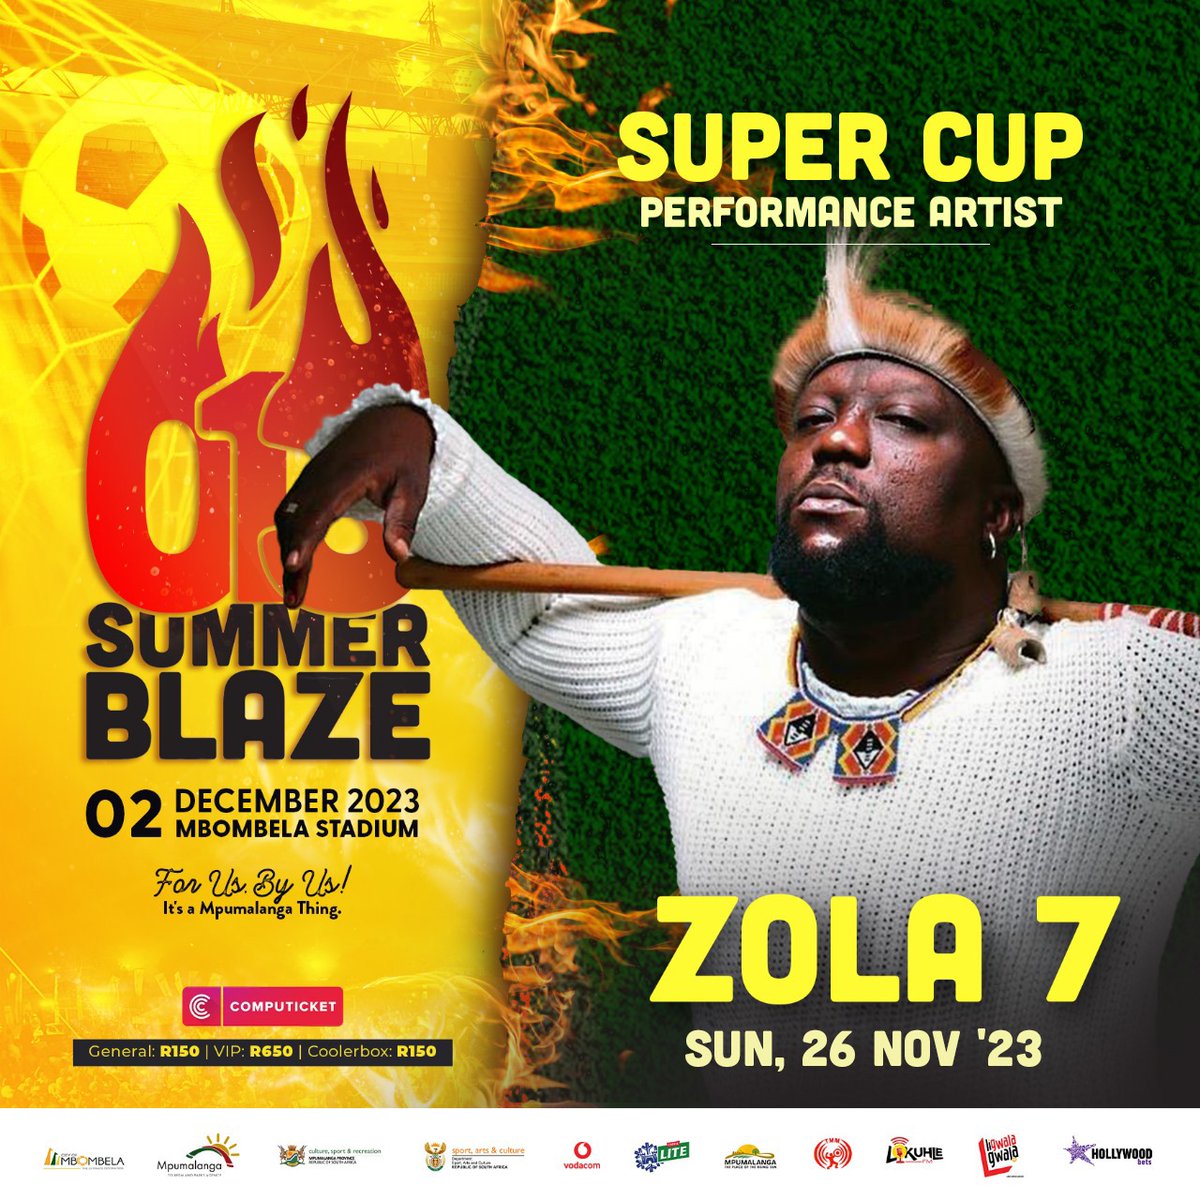 Mbombela, see you on Sunday at the 013 Summer Blaze Super Cup. Ungaphuthelwa🤙🏾🤙🏾 #Namanje